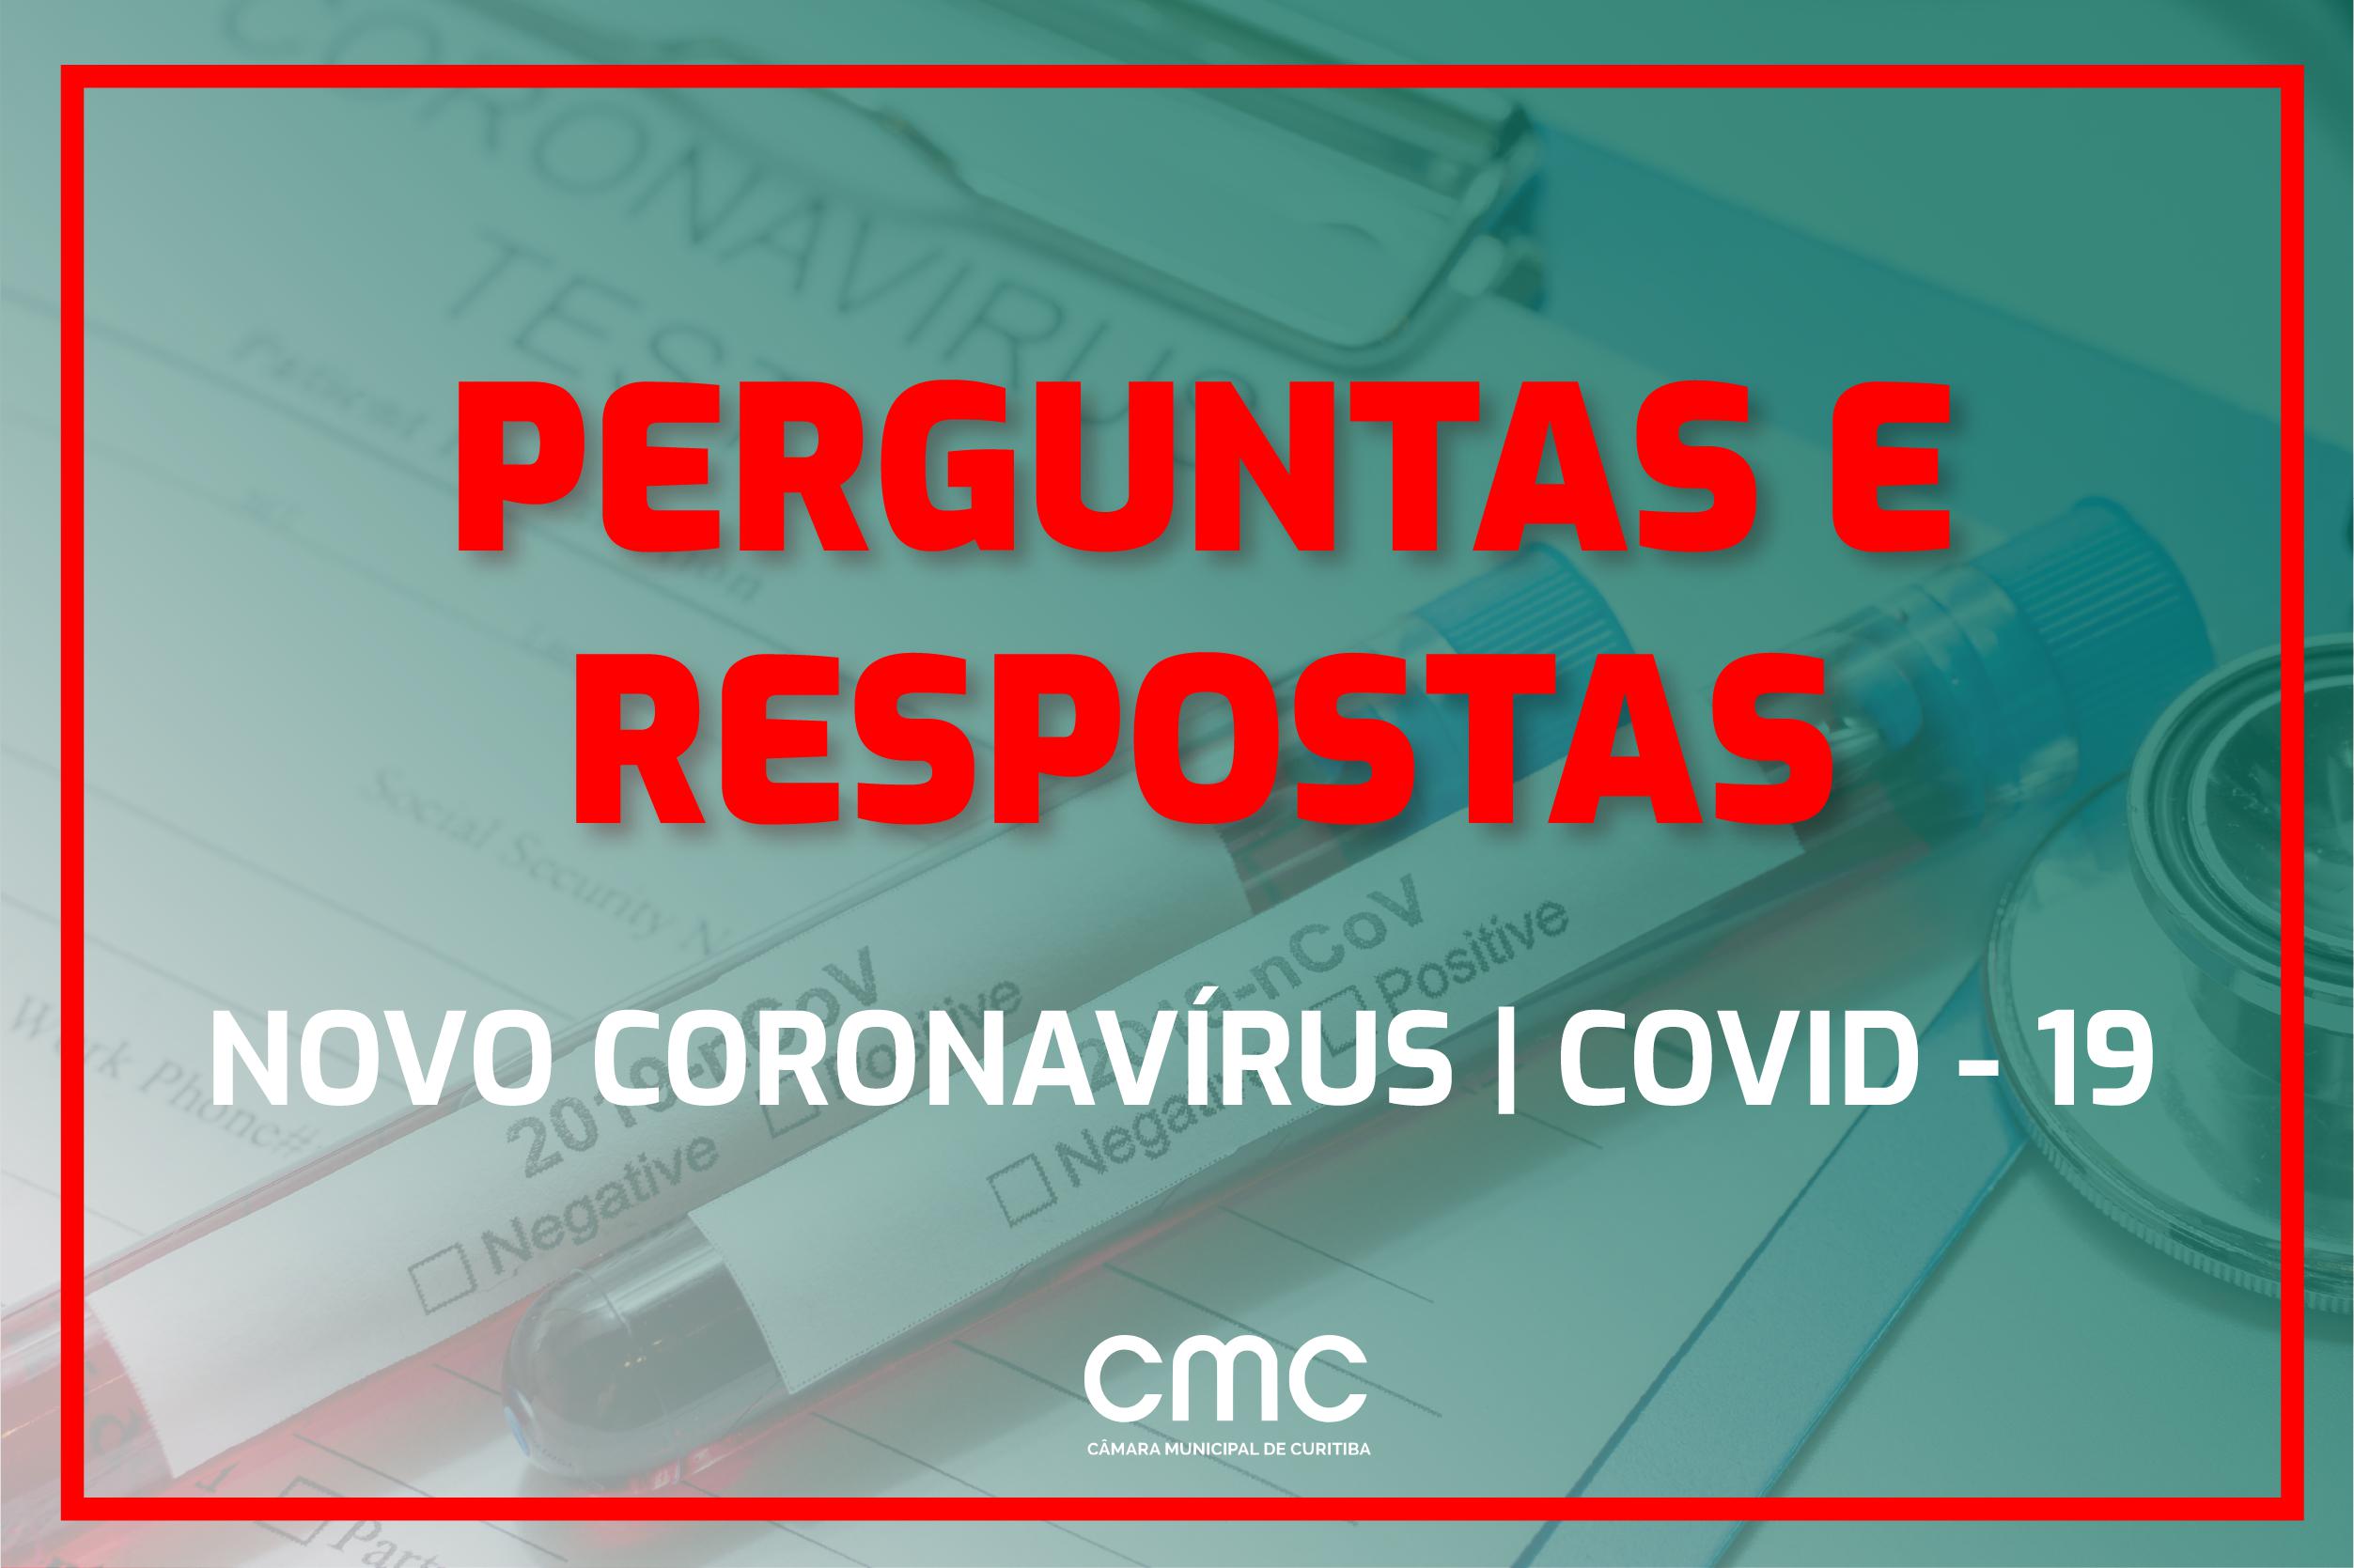 Novo coronavírus: confira perguntas e respostas